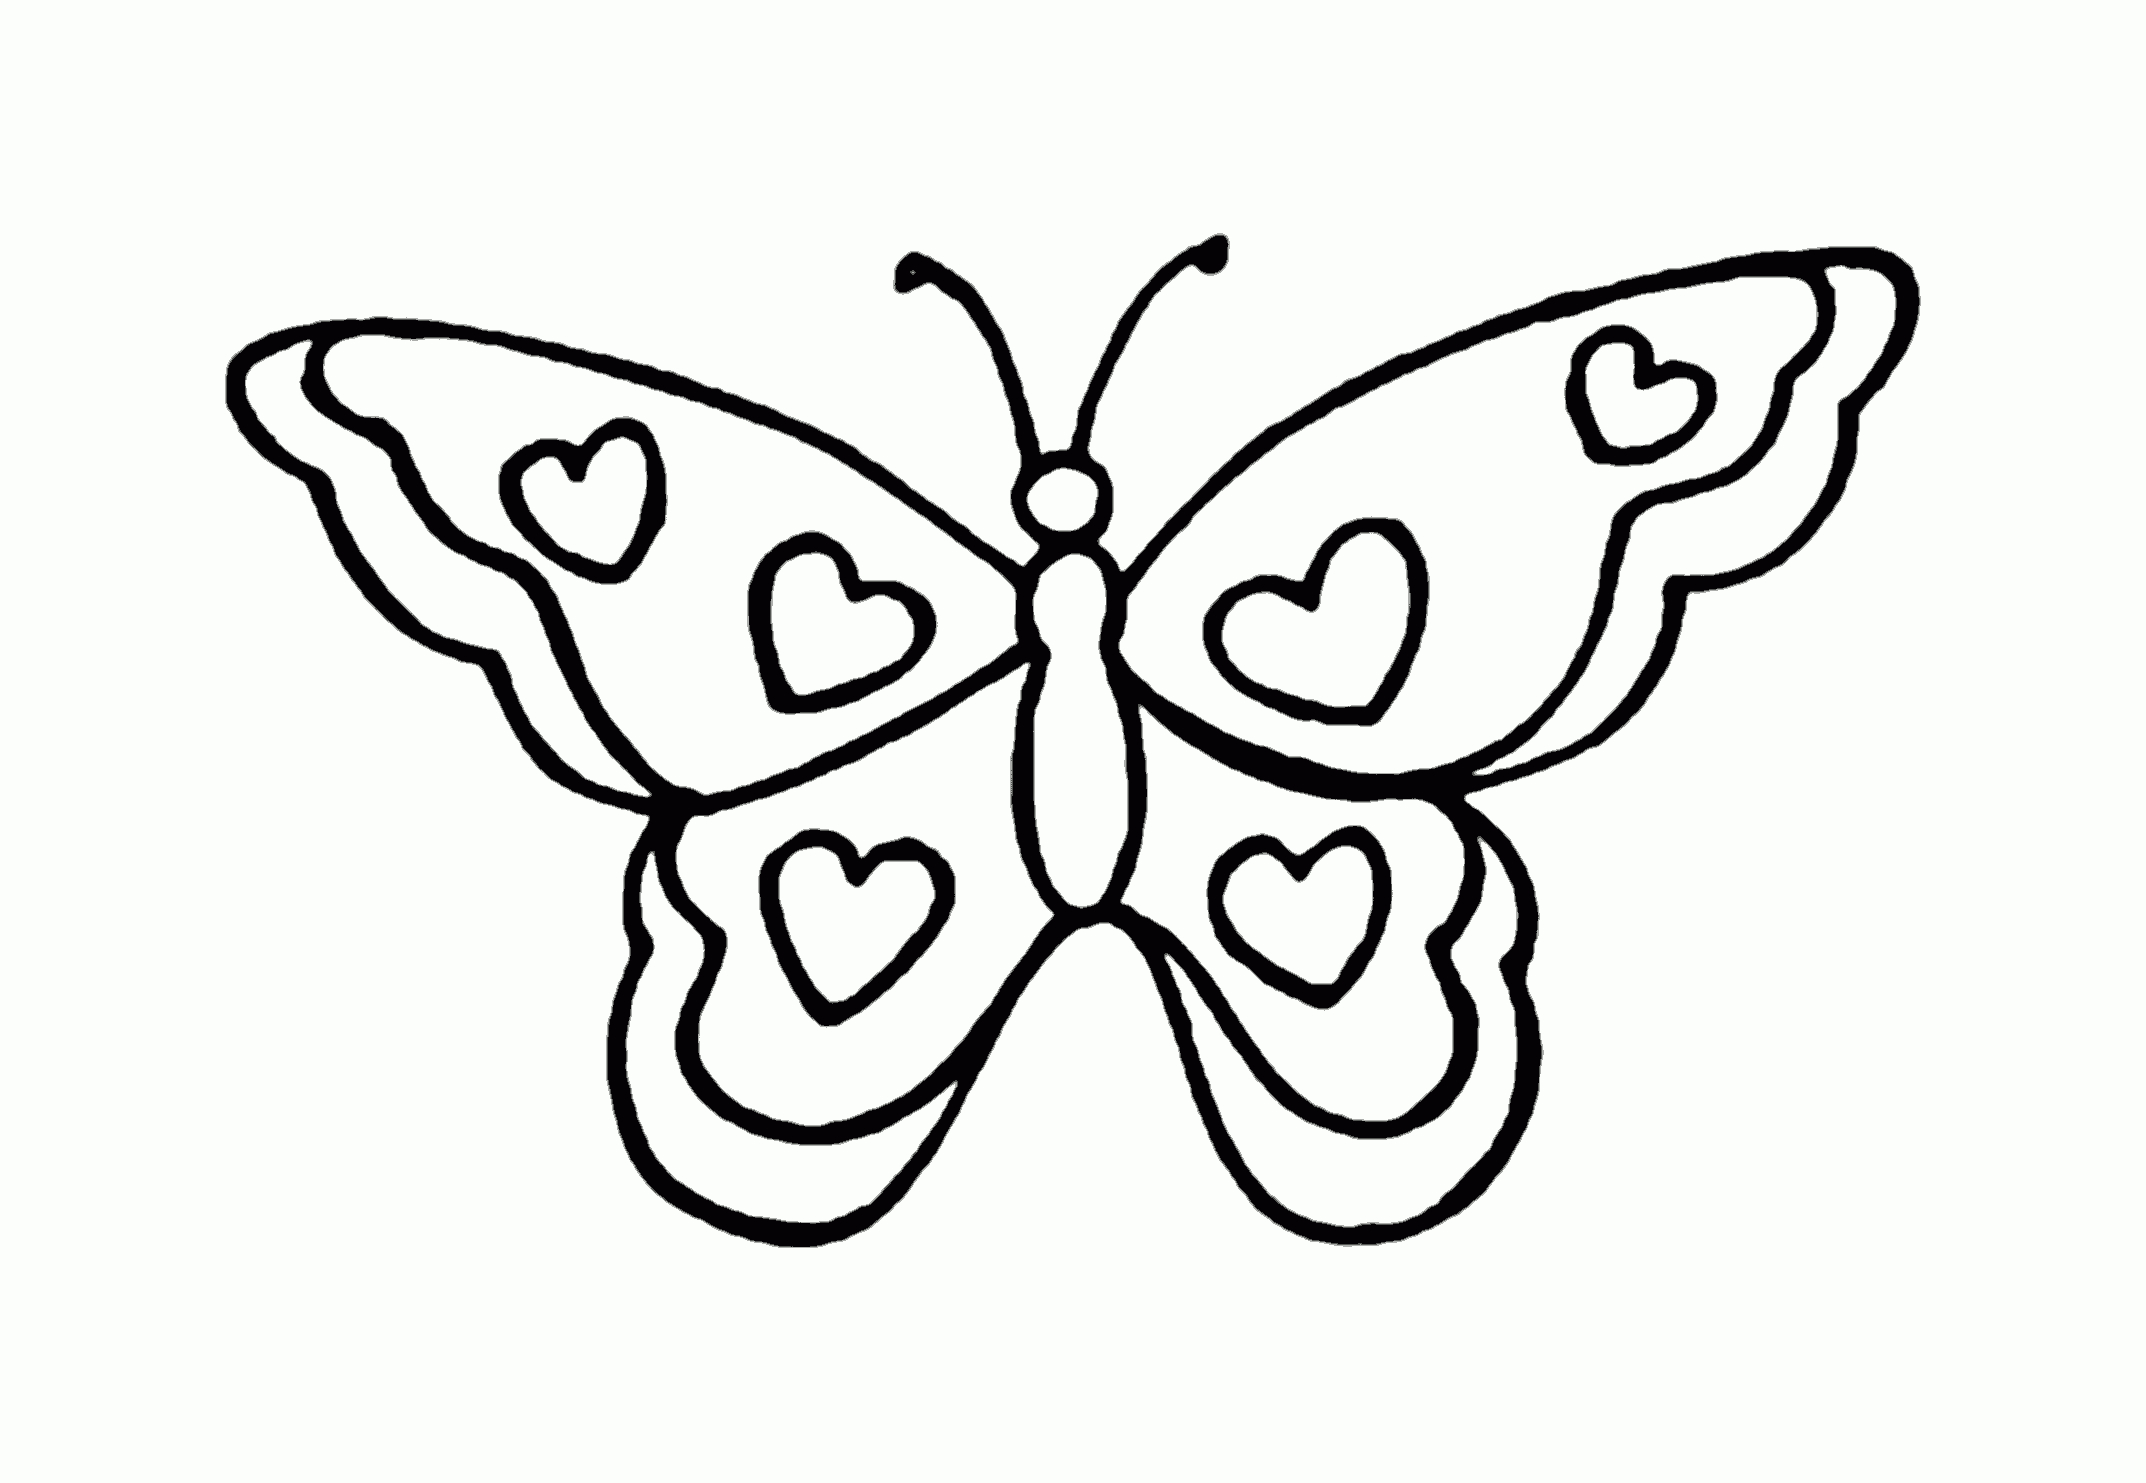 Schmetterlinge Ausmalbilder - Vorlagen365 - Kostenlose innen Malvorlage